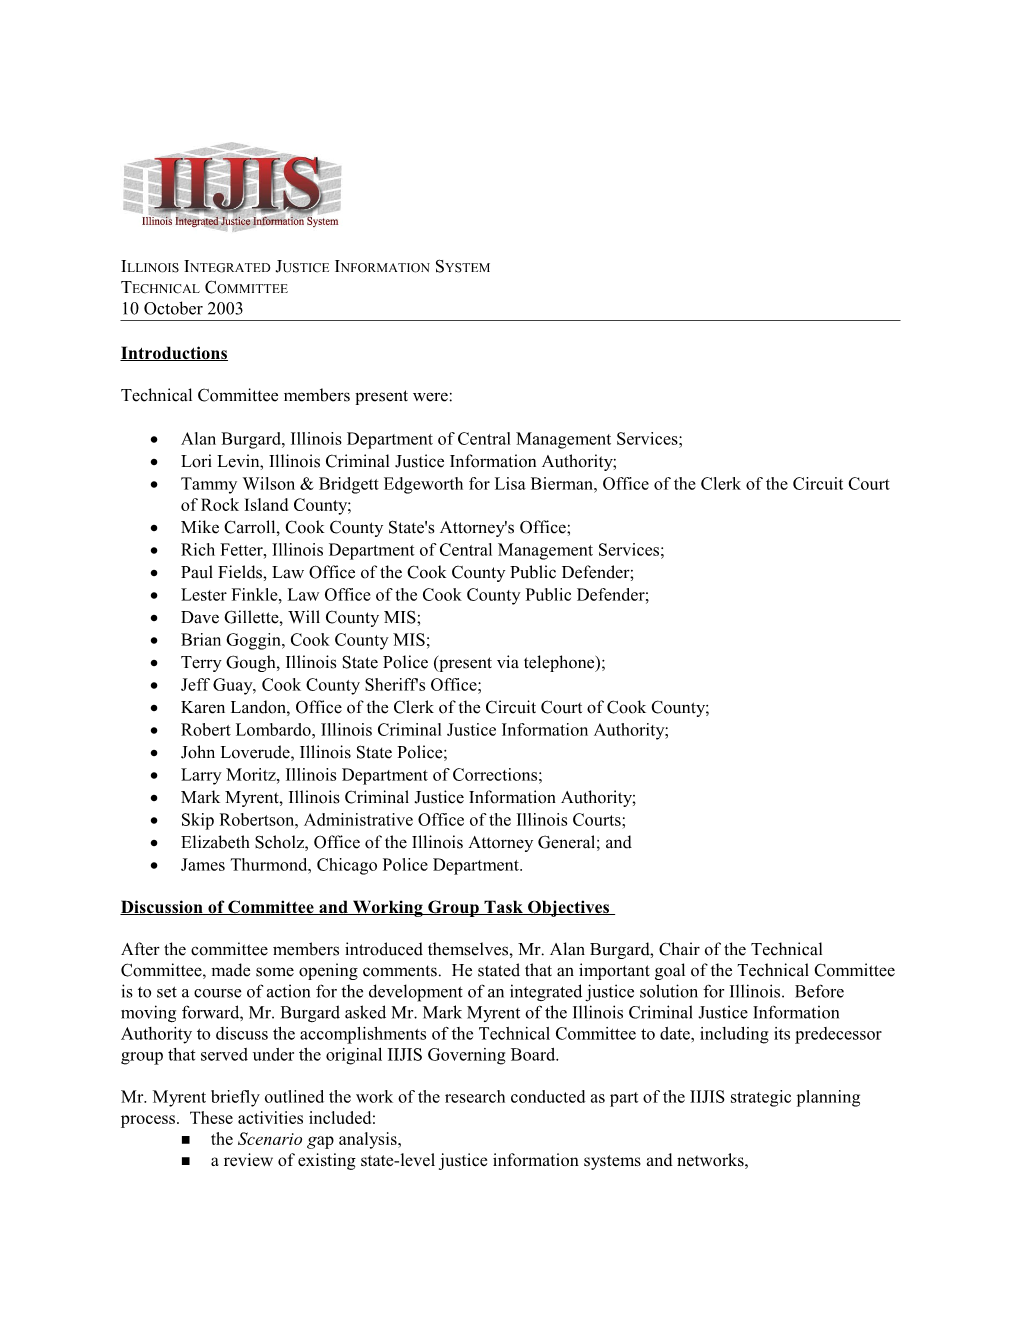 IIJIS Technical Committee Meeting Notes